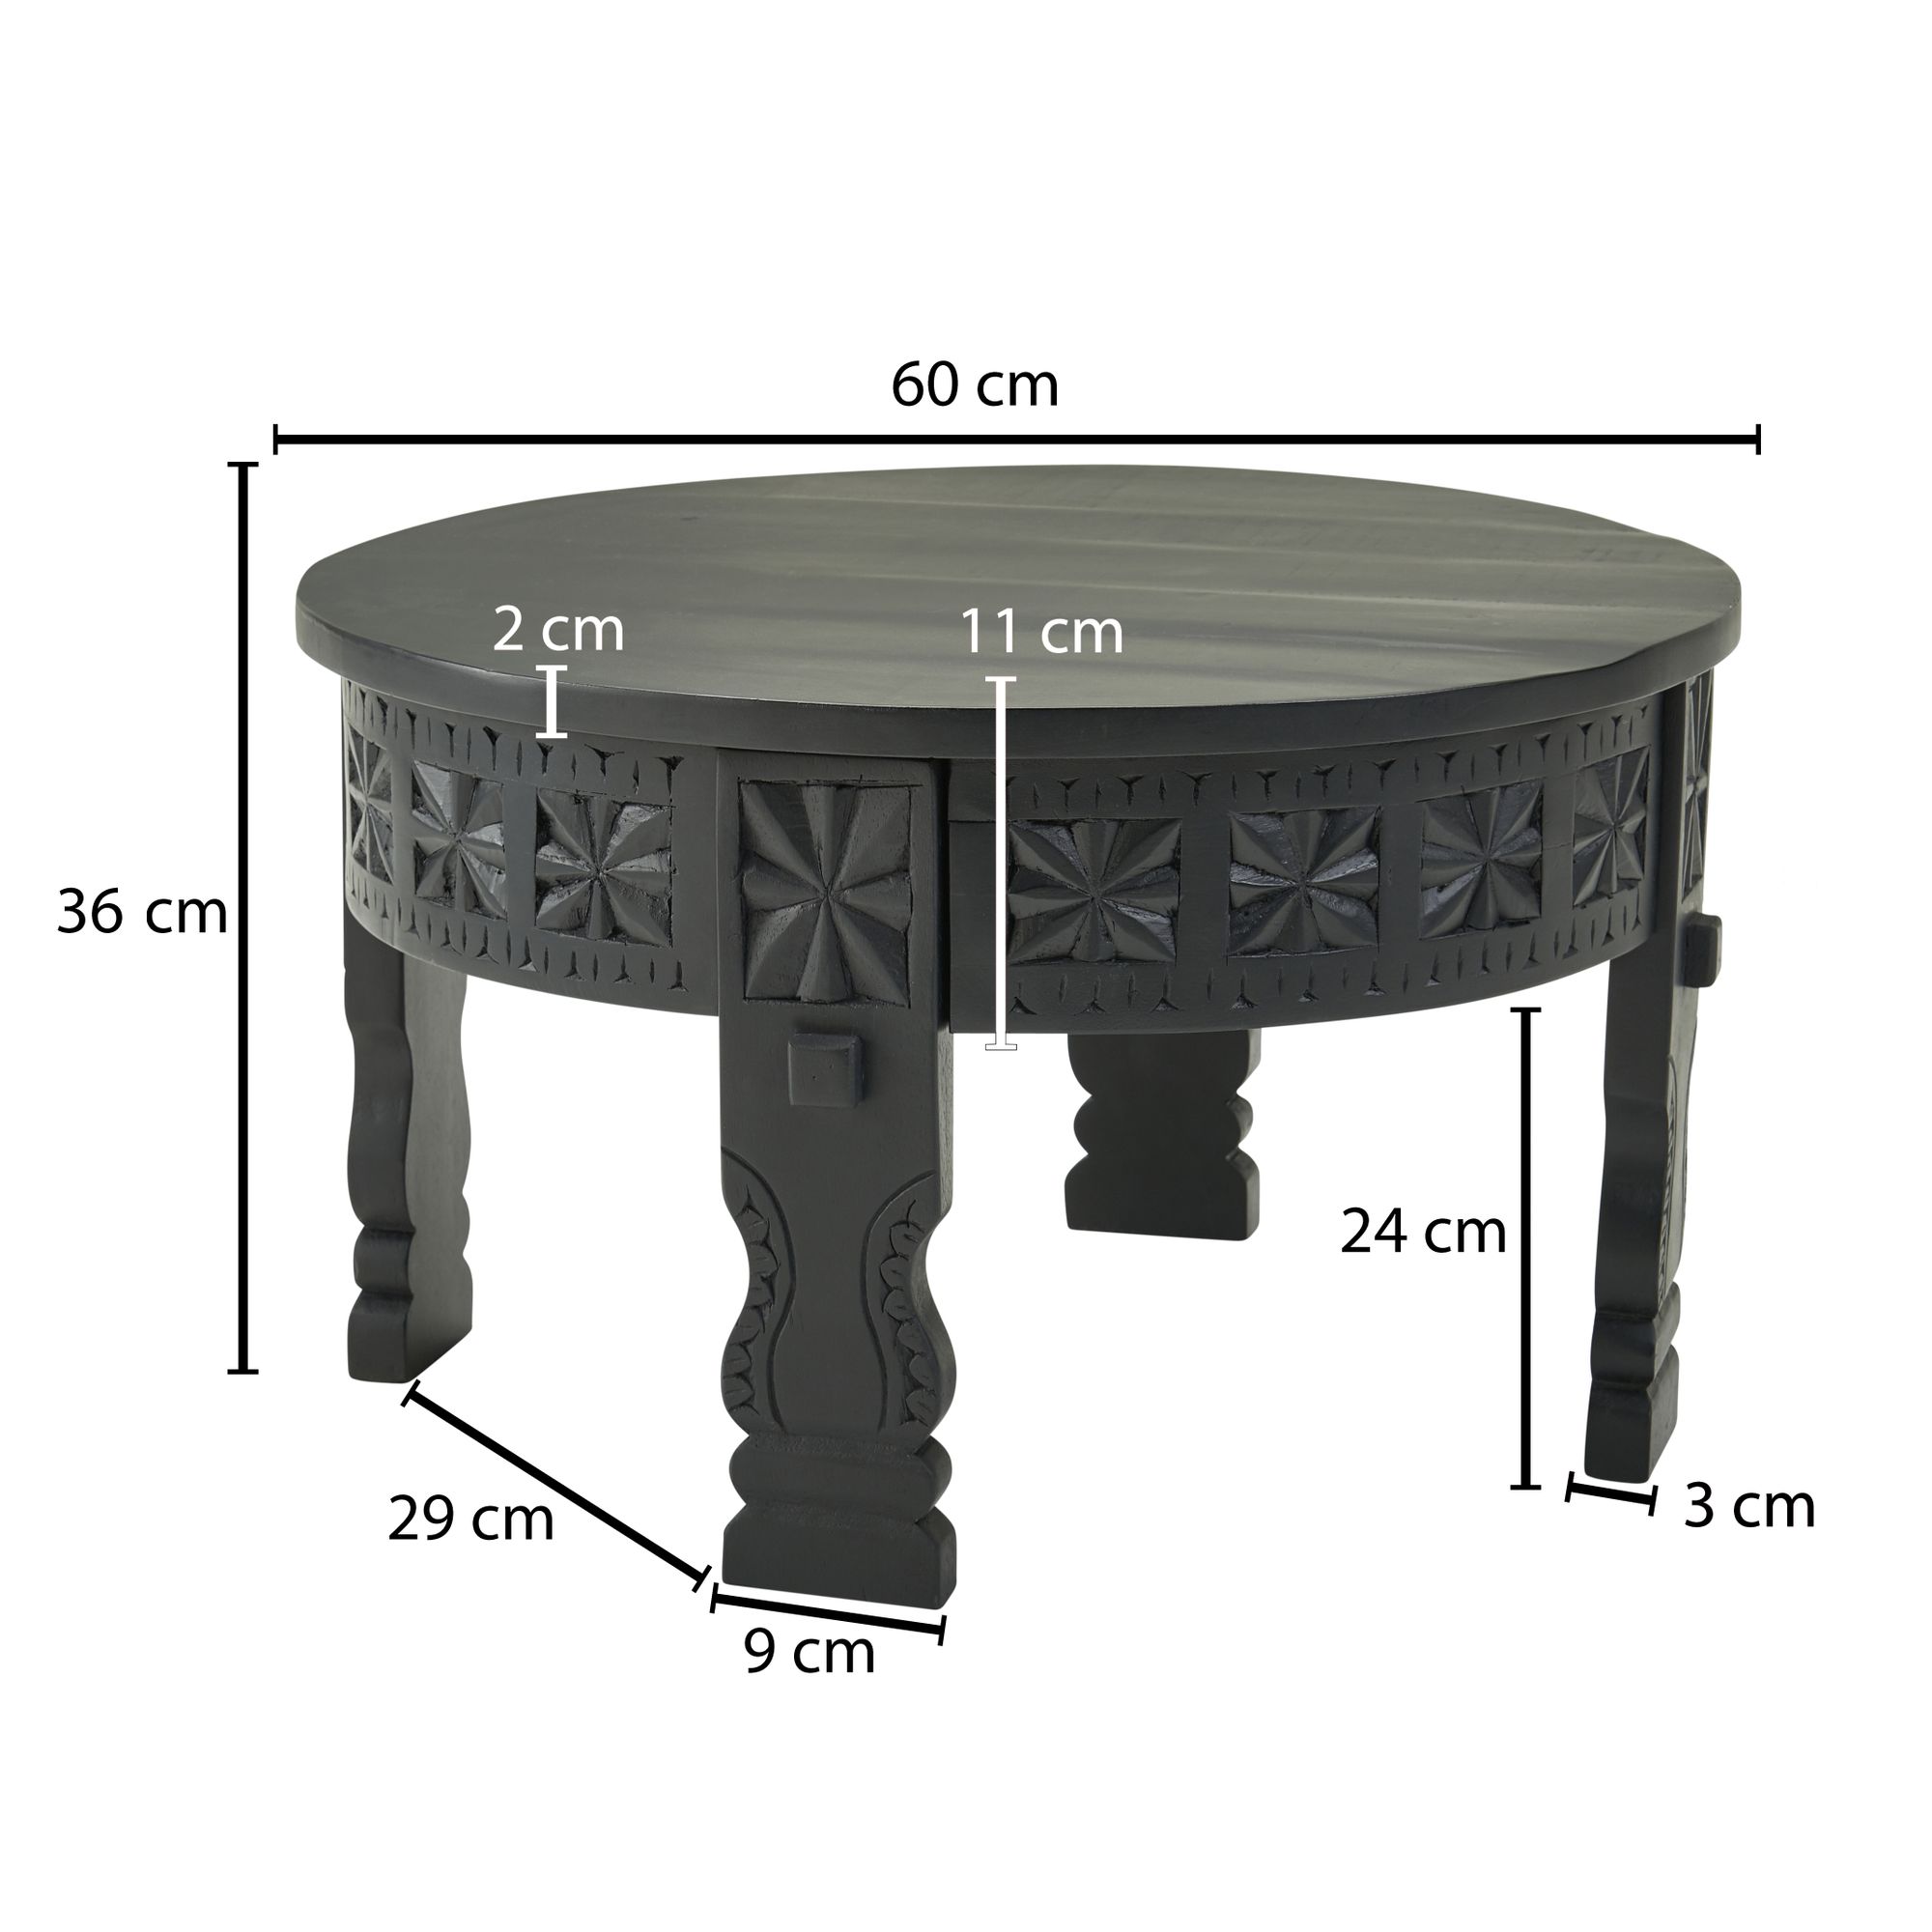 orientaalse salontafel zwart 60 cm